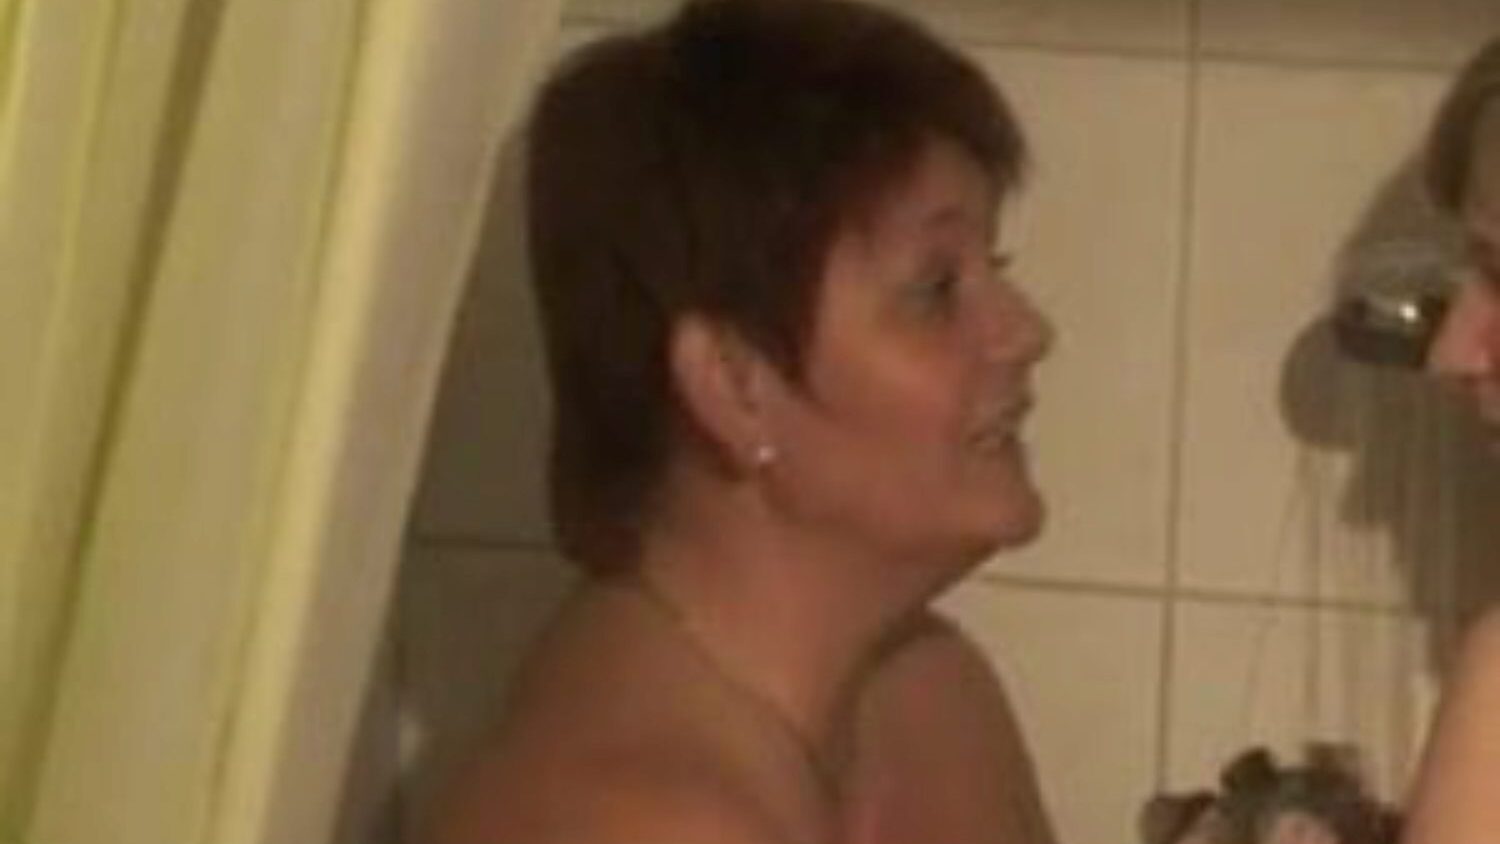 שתי דו-בנות מתקלחות: סרטון פורנו לסבי בחינם 76 - xhamster צפה ב -2 נערות מתקלחות שפופרת סצנת אהבה לסרטים חופשיים לכולם על xhamster, עם האוסף השולט של לסבית גרמנית, אמא שאני רוצה לזיין ופורנוגרפיה של bbw רצפי סרטים